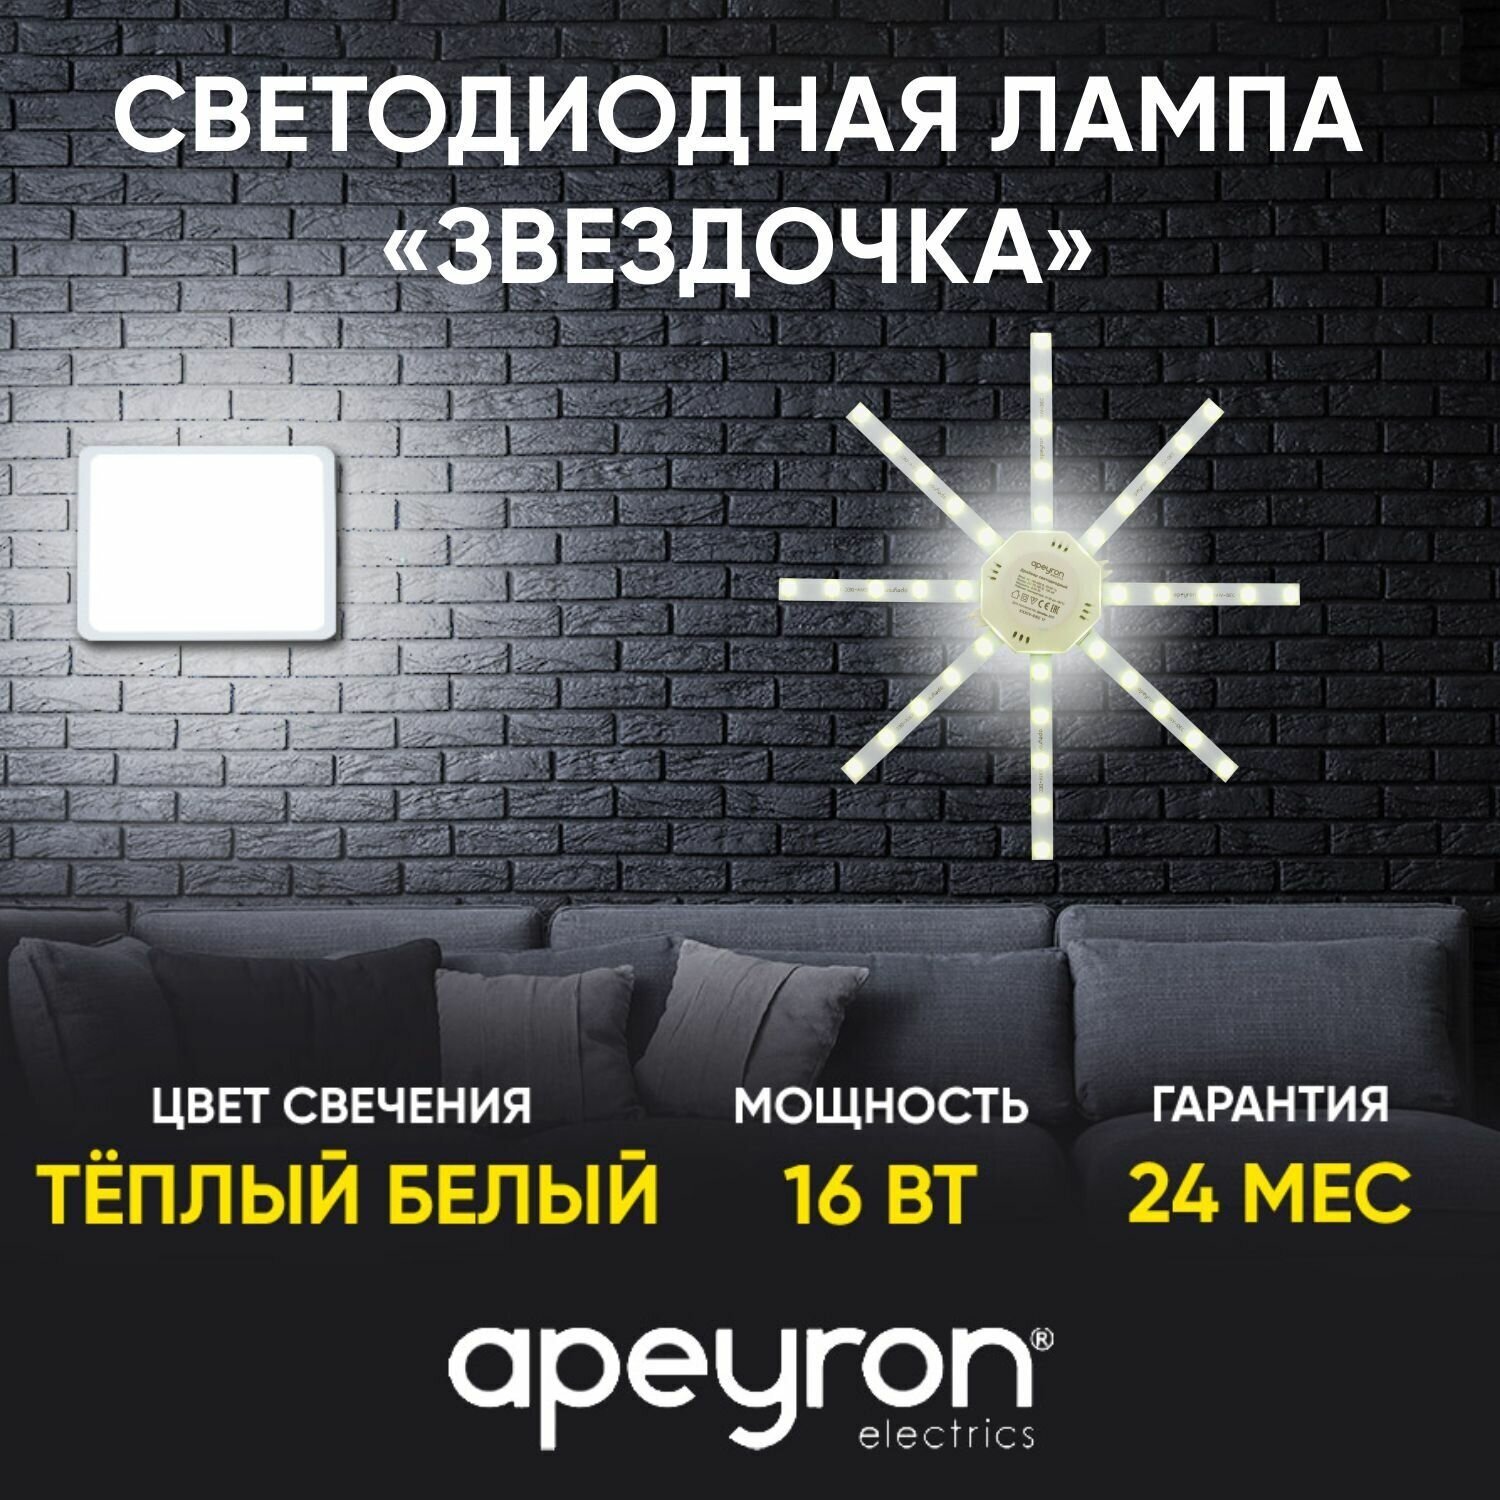 Светодиодный модуль Apeyron Electrics Звездочка 12-09